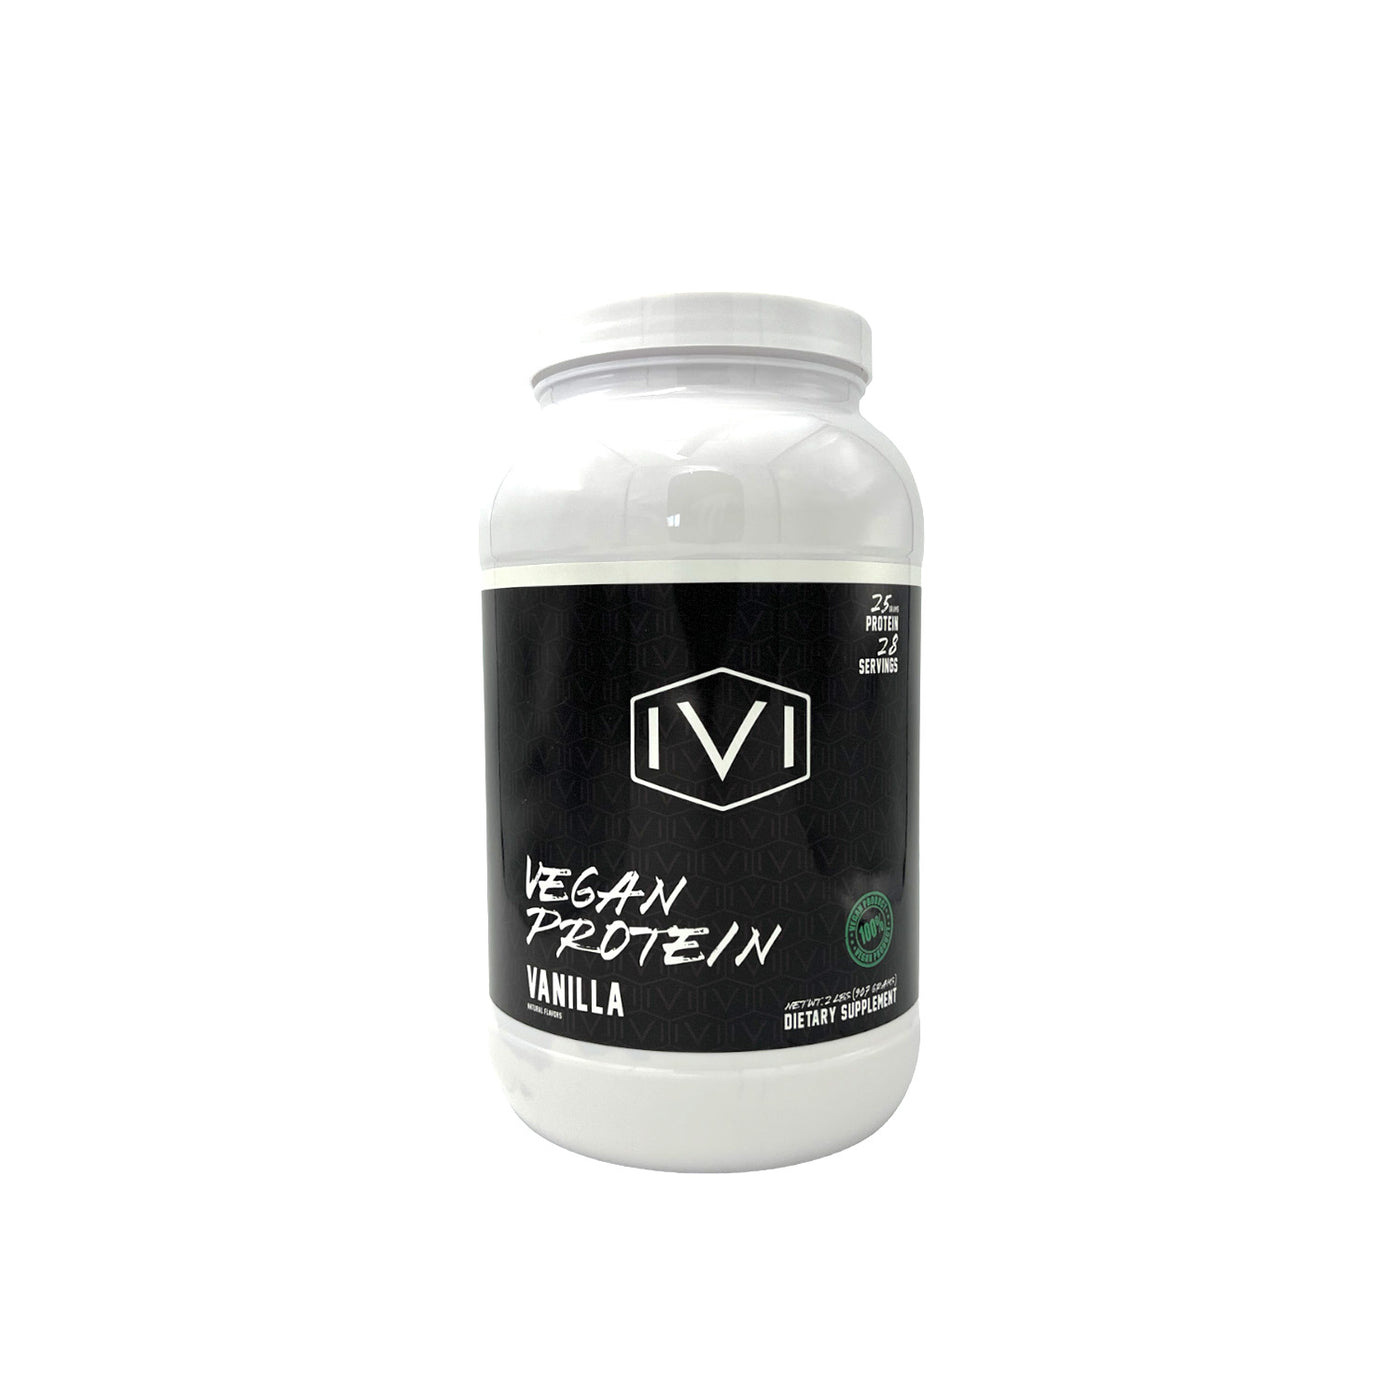 IVI Vegan Protein : Vanilla